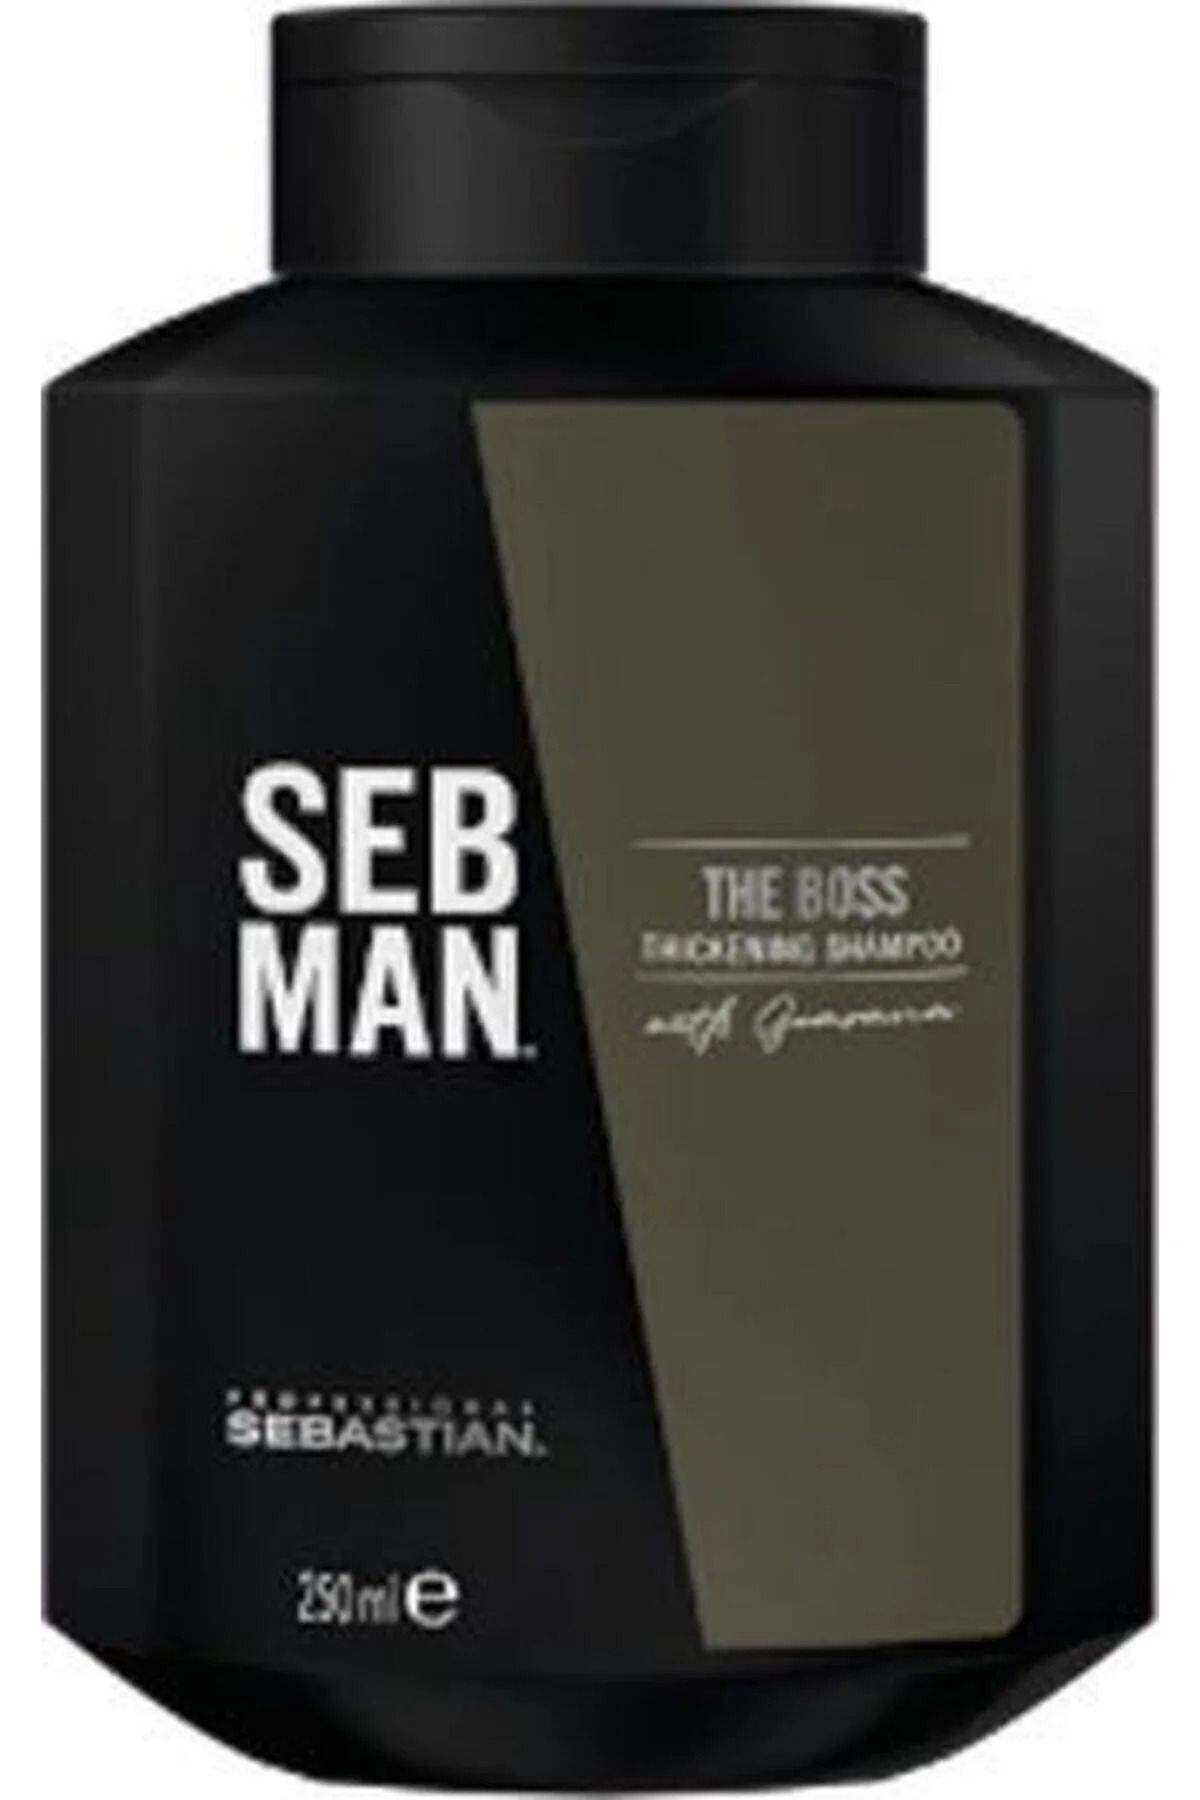 Sebastian The Boss Erkekler İçin İnce Telli Saçlar İçin Kalınlaştırıcı Şampuan 250MLSED6974664643662